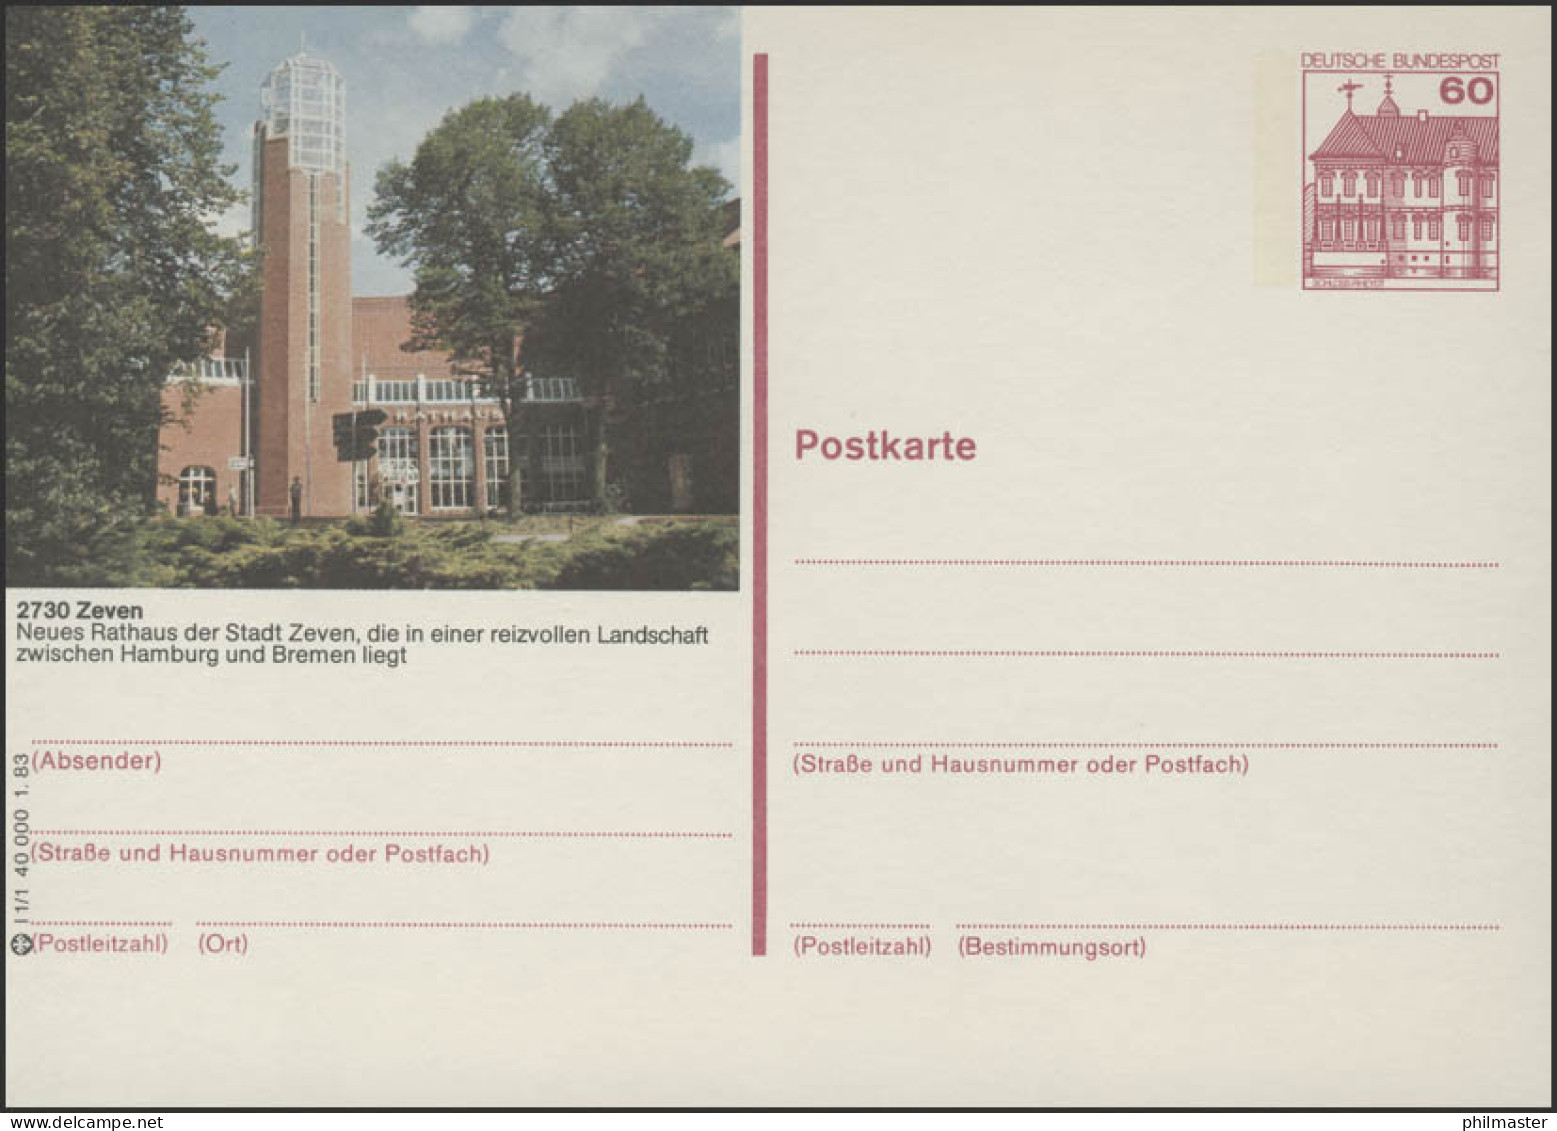 P138-l1/001 - 2730 Zeven, Neues Rathaus ** - Bildpostkarten - Ungebraucht